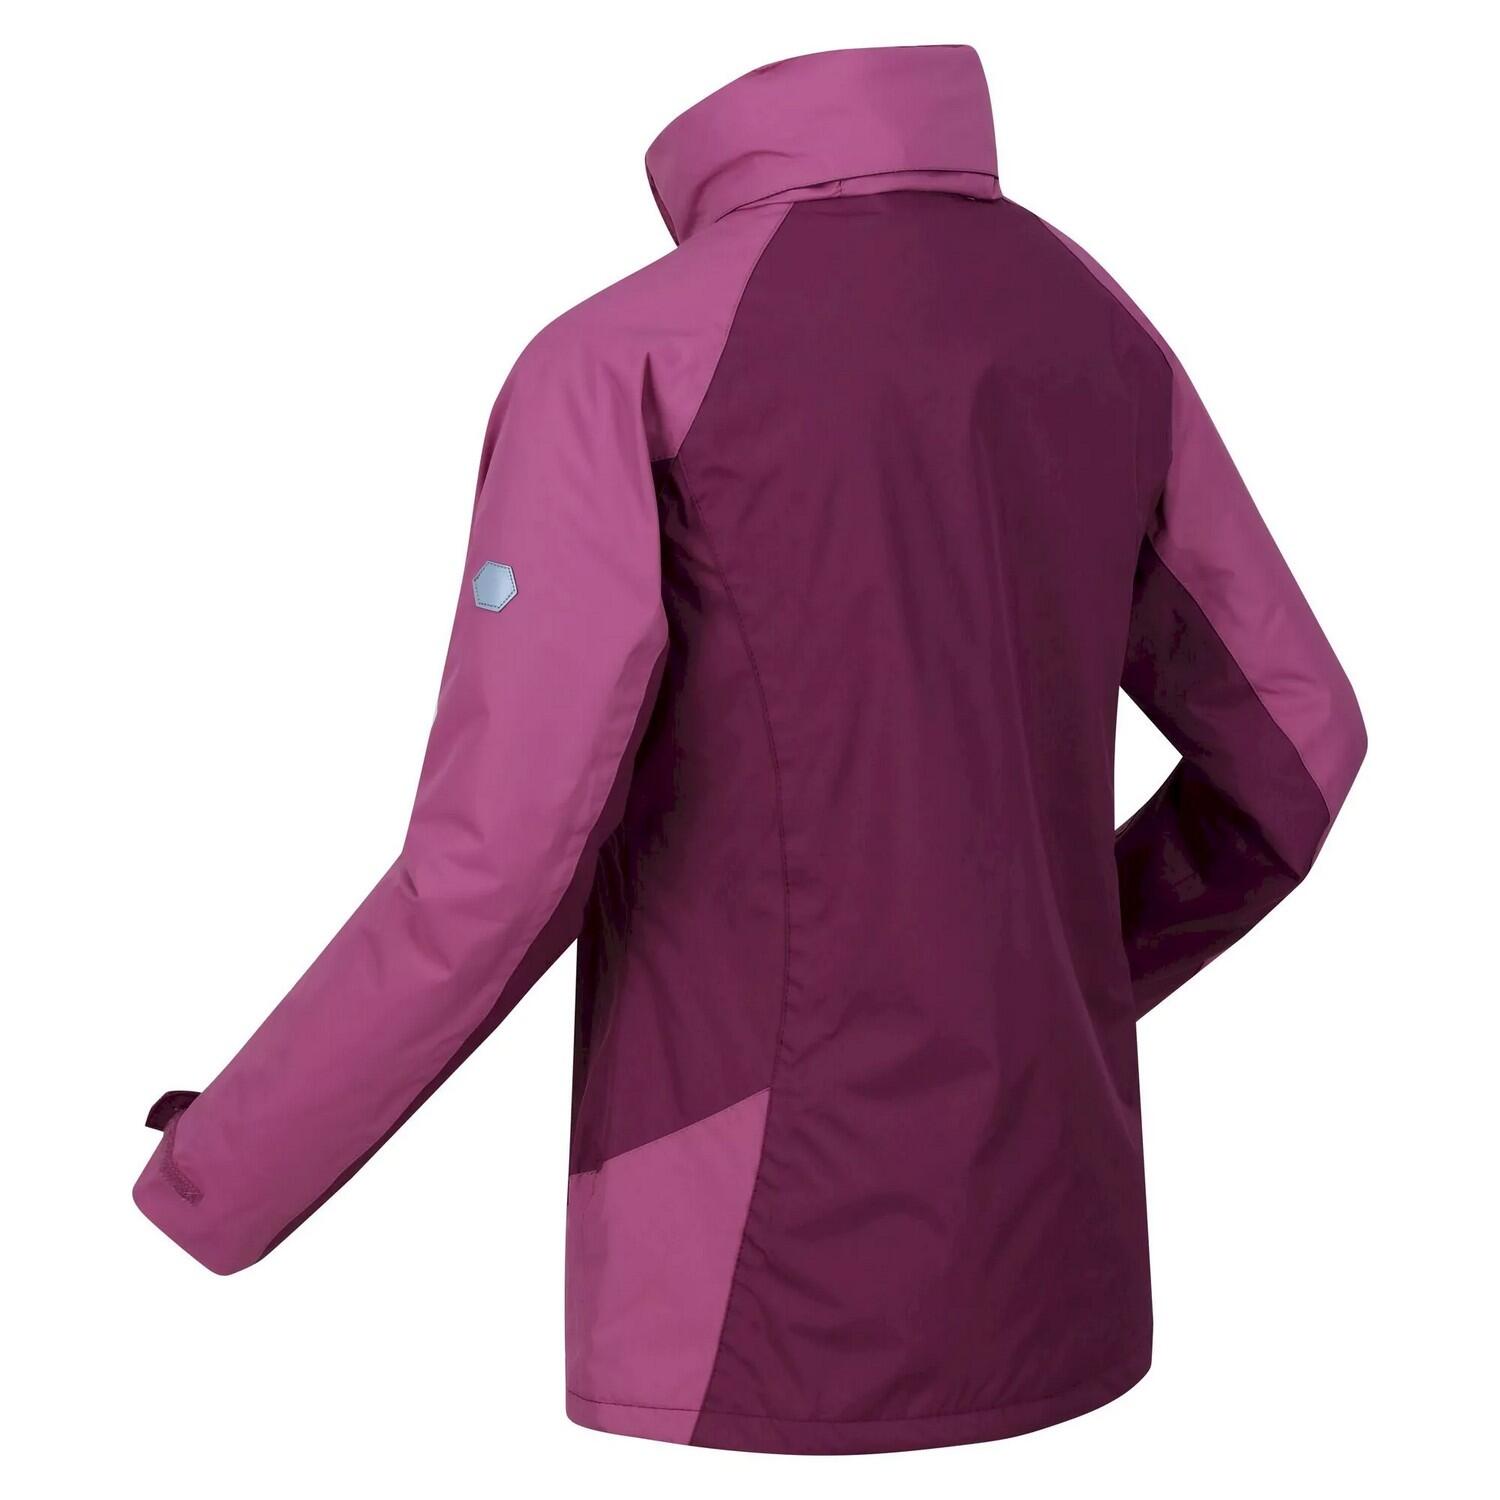 Womens/Ladies Calderdale Winter Waterproof Jacket (Amaranth Haze/Violet) 4/5